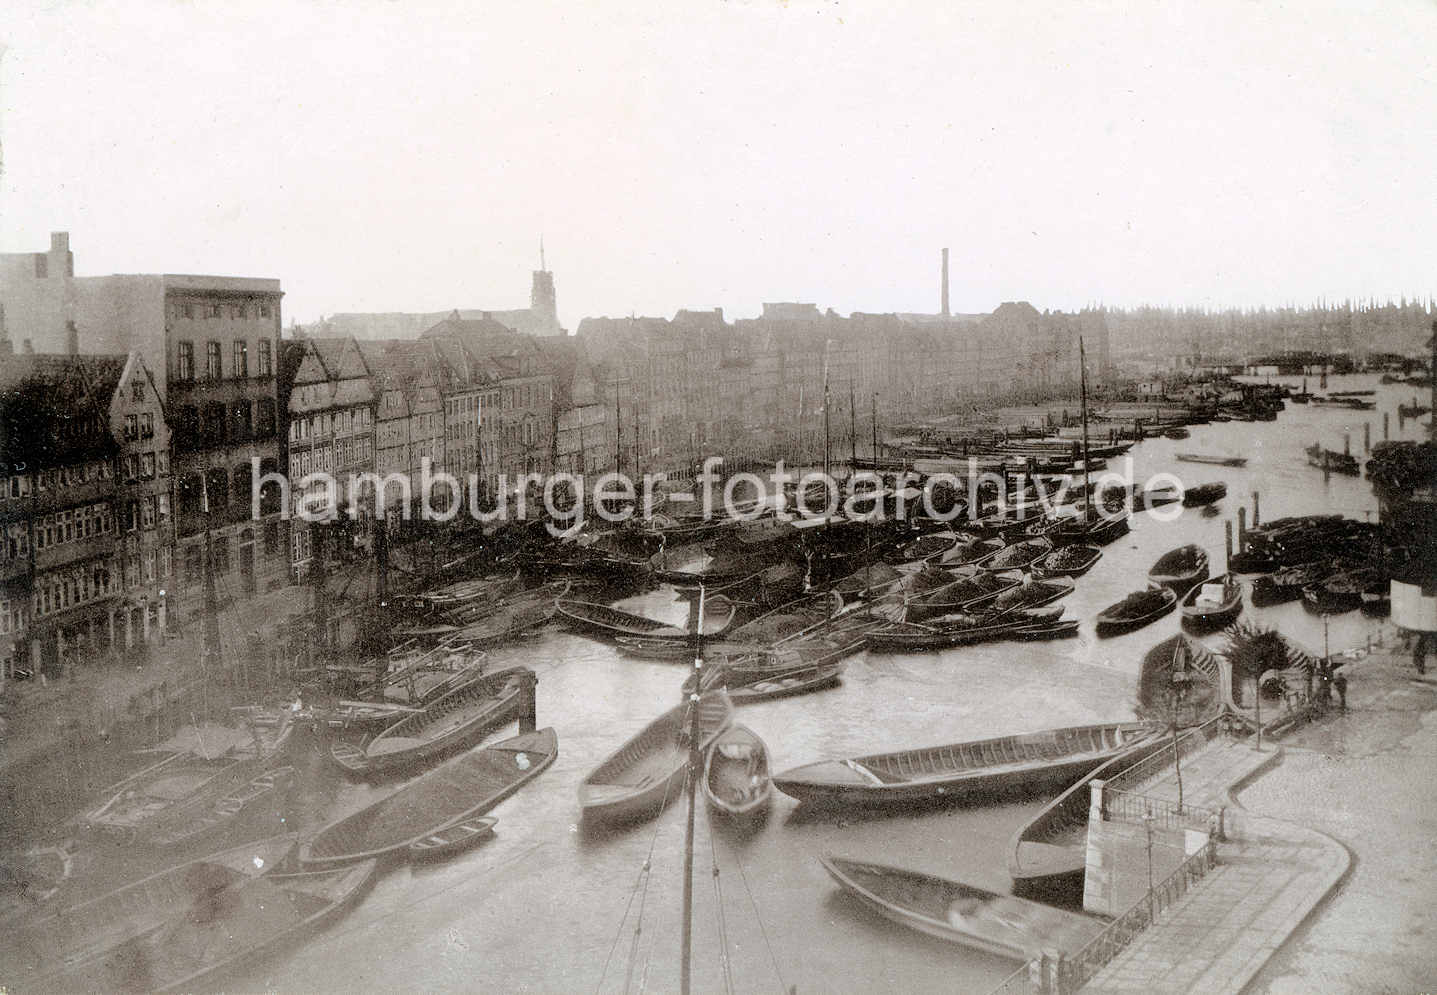 X000133 Alte Fotografie vom Hamburger Binnenhafen / Mührenfleet - historische Wohnbebauung. | Binnenhafen - historisches Hafenbecken in der Hamburger Altstadt.